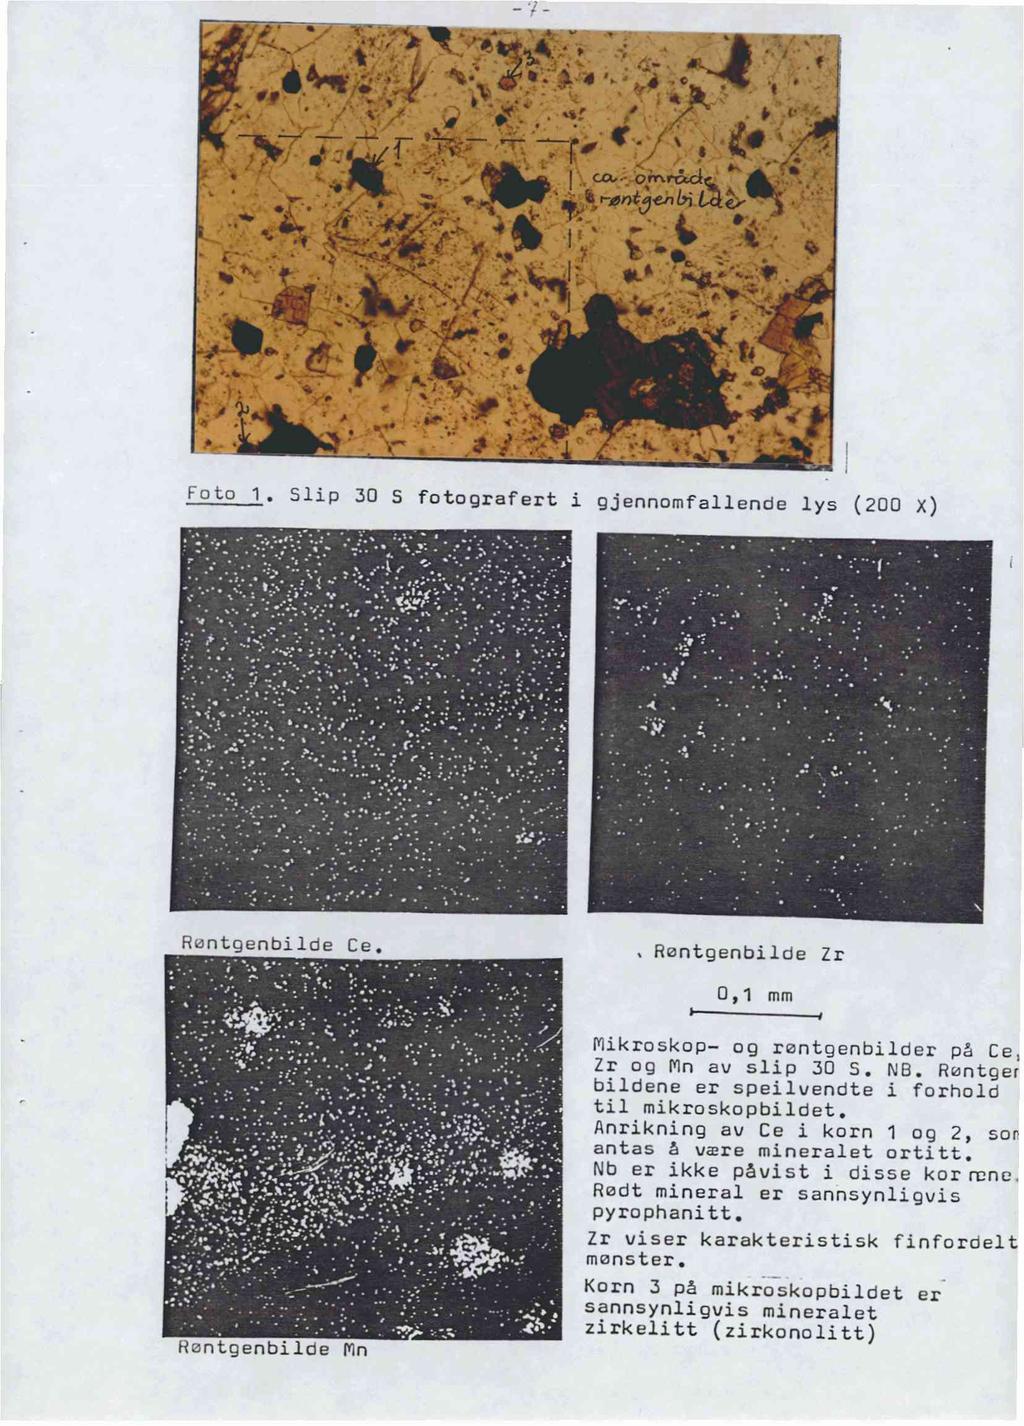 CN. Foto 1. Slip 30 S fotografert i gjennomfallende lys (200 X) Røntgenbilde Ce. Rentgenbilde Zr 0,1 mm Hantgenbilde Mn r Mikroskop og rantgenbilder på Ce, Zr og Mn av slip 30 S. NB.